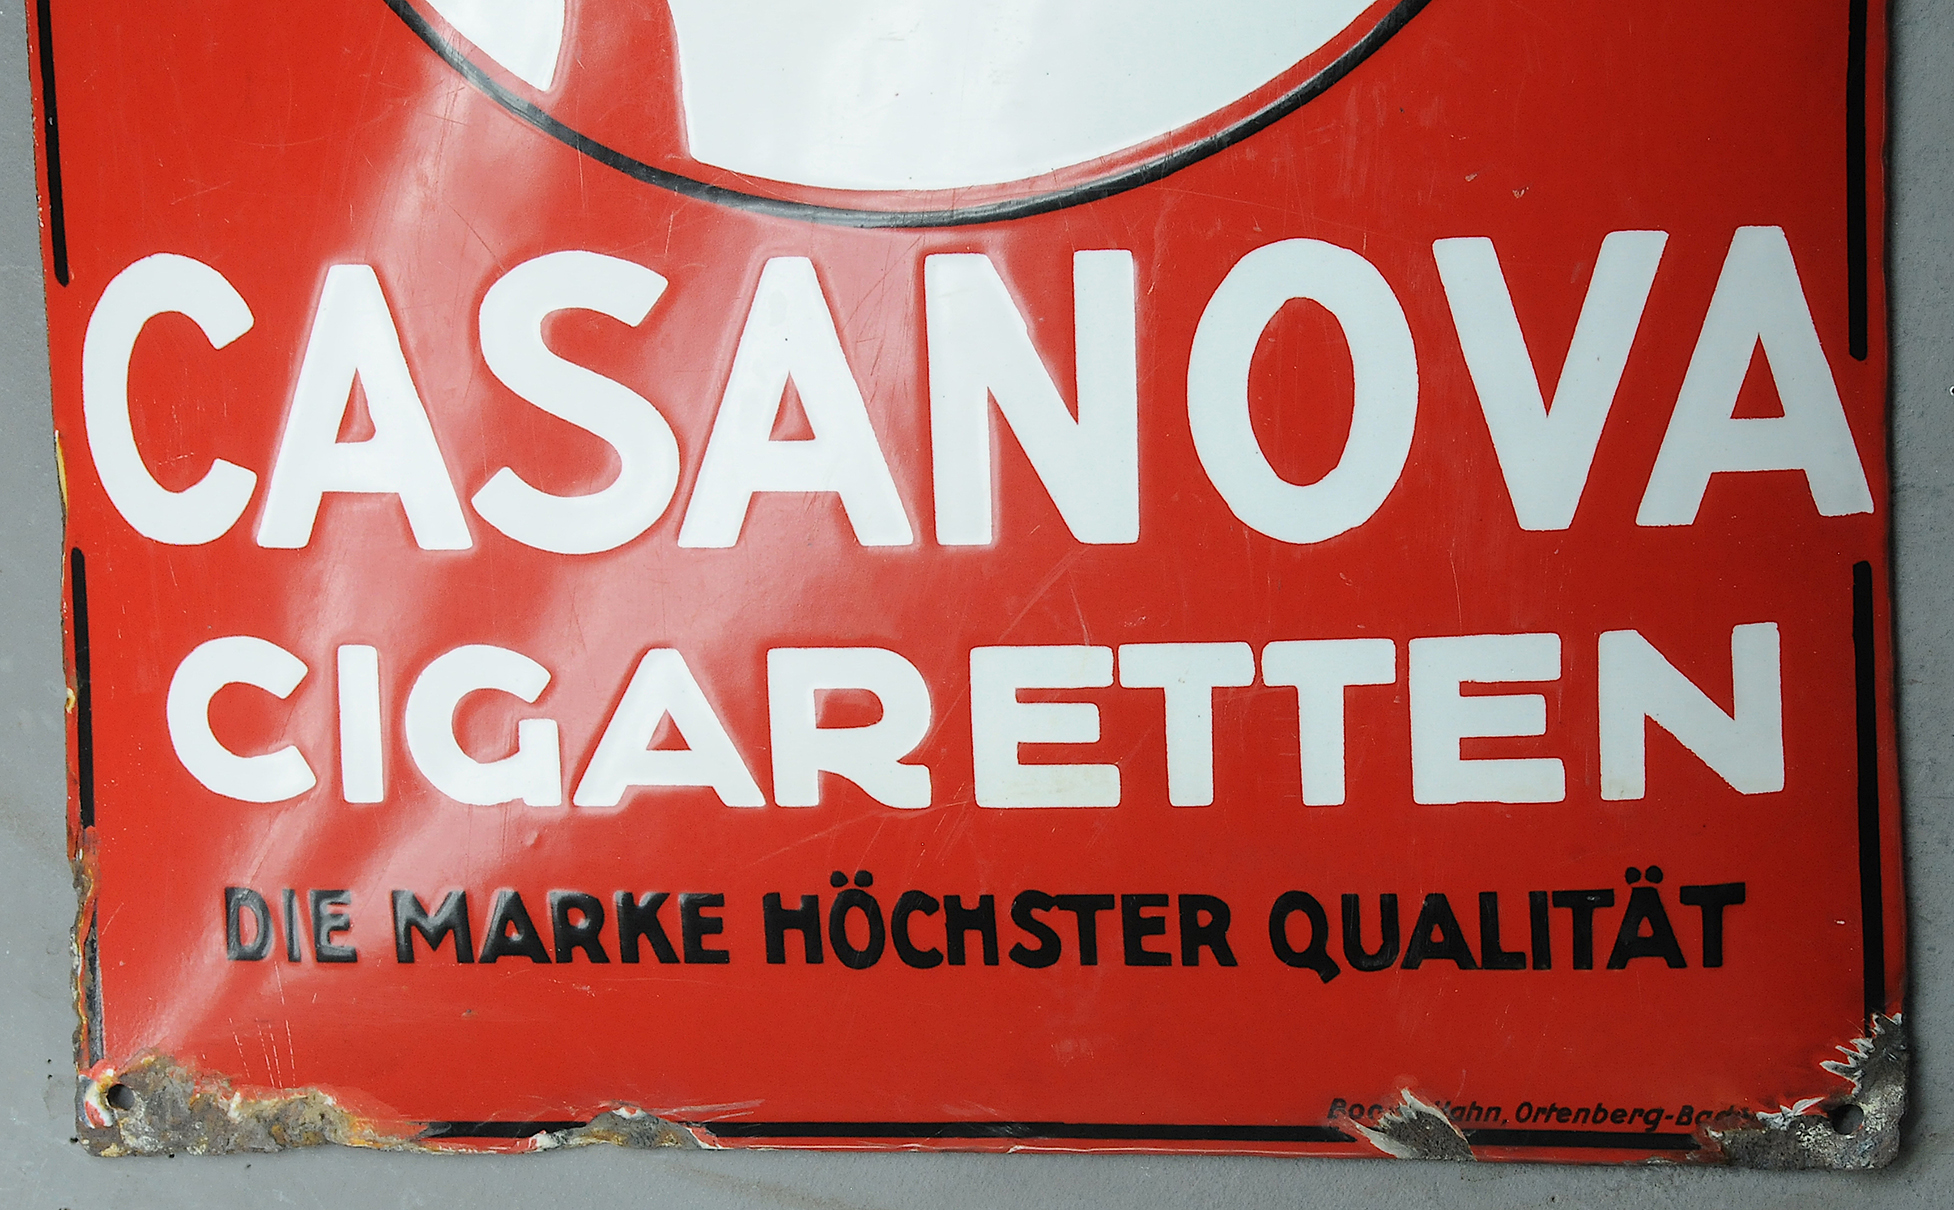 Casanova Cigaretten - Image 7 of 7